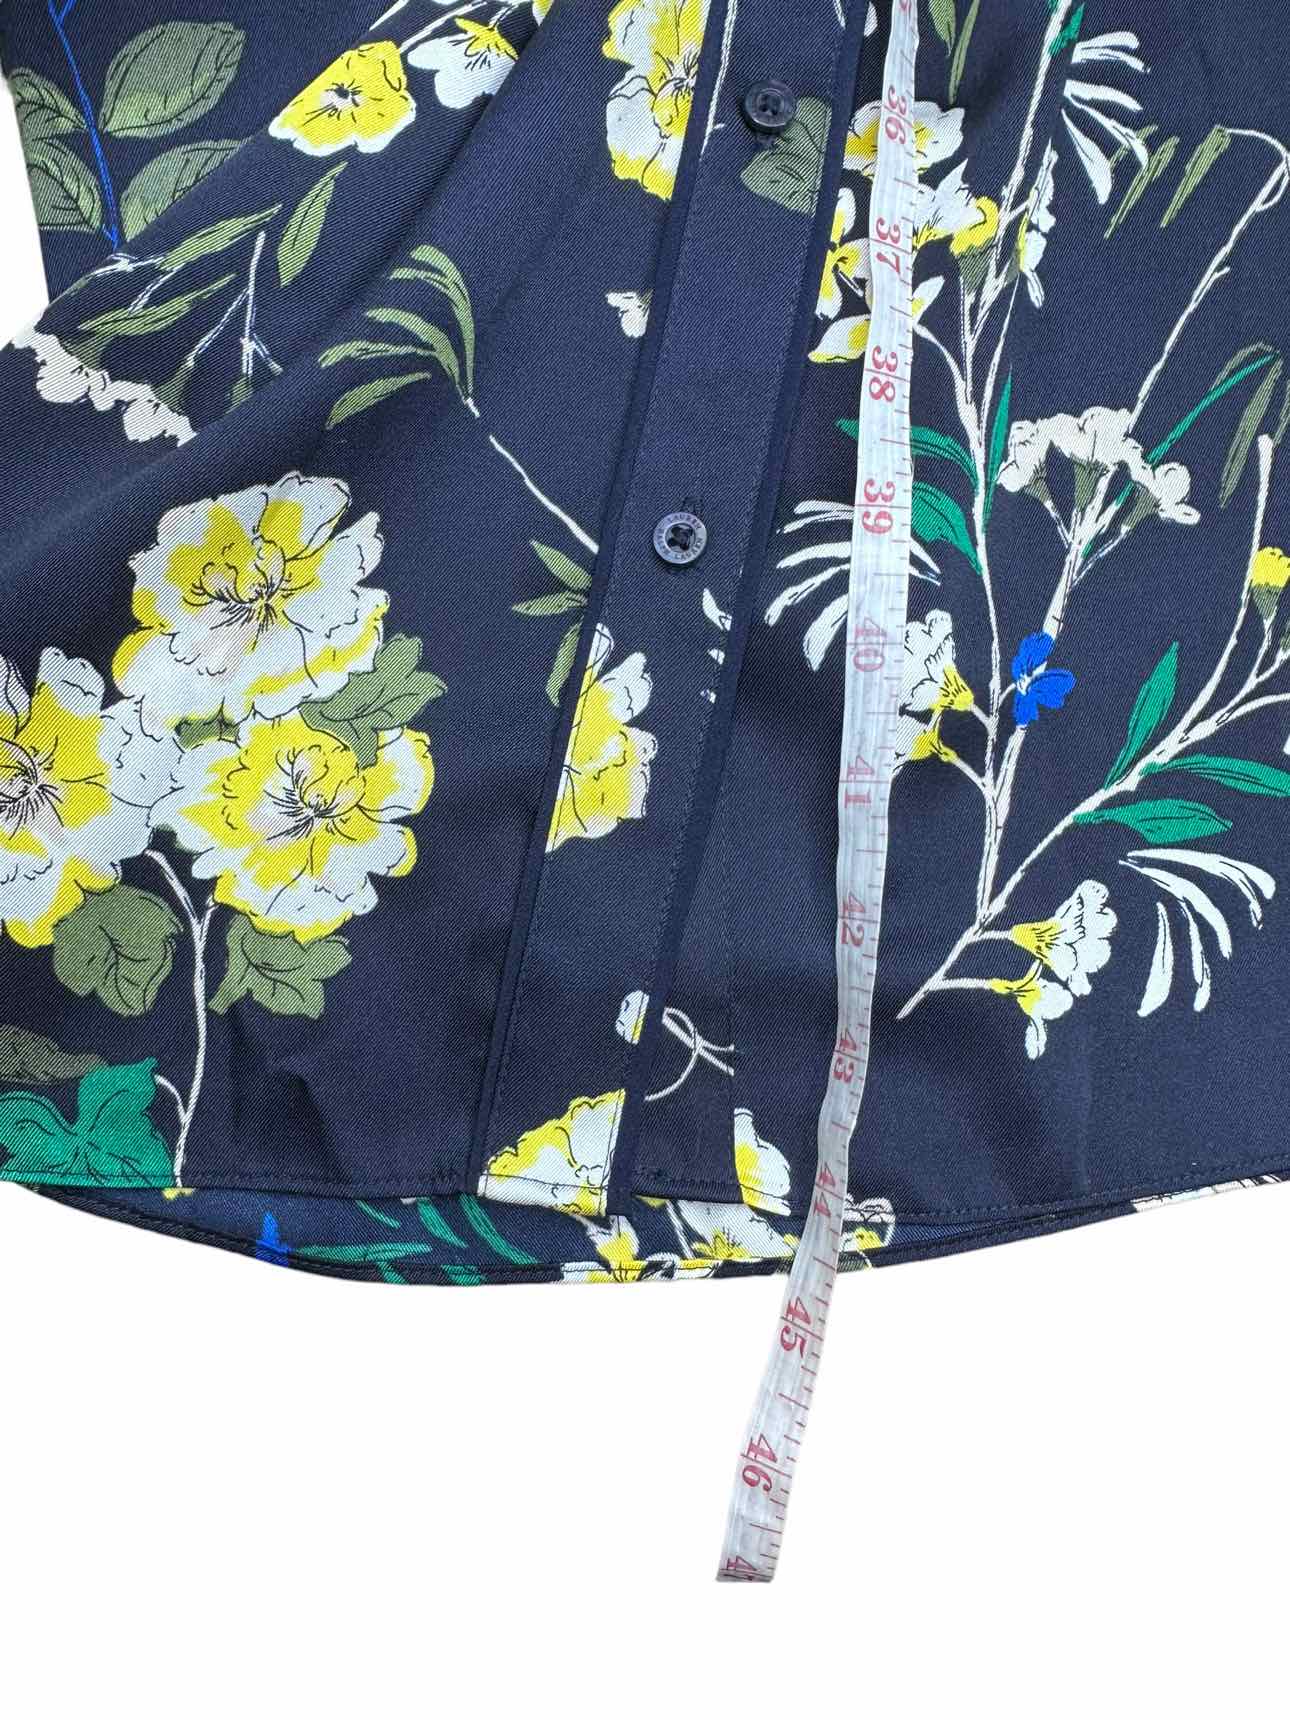 LAUREN Ralph Lauren NWT Blue Floral Print Shirt Dress Size 8